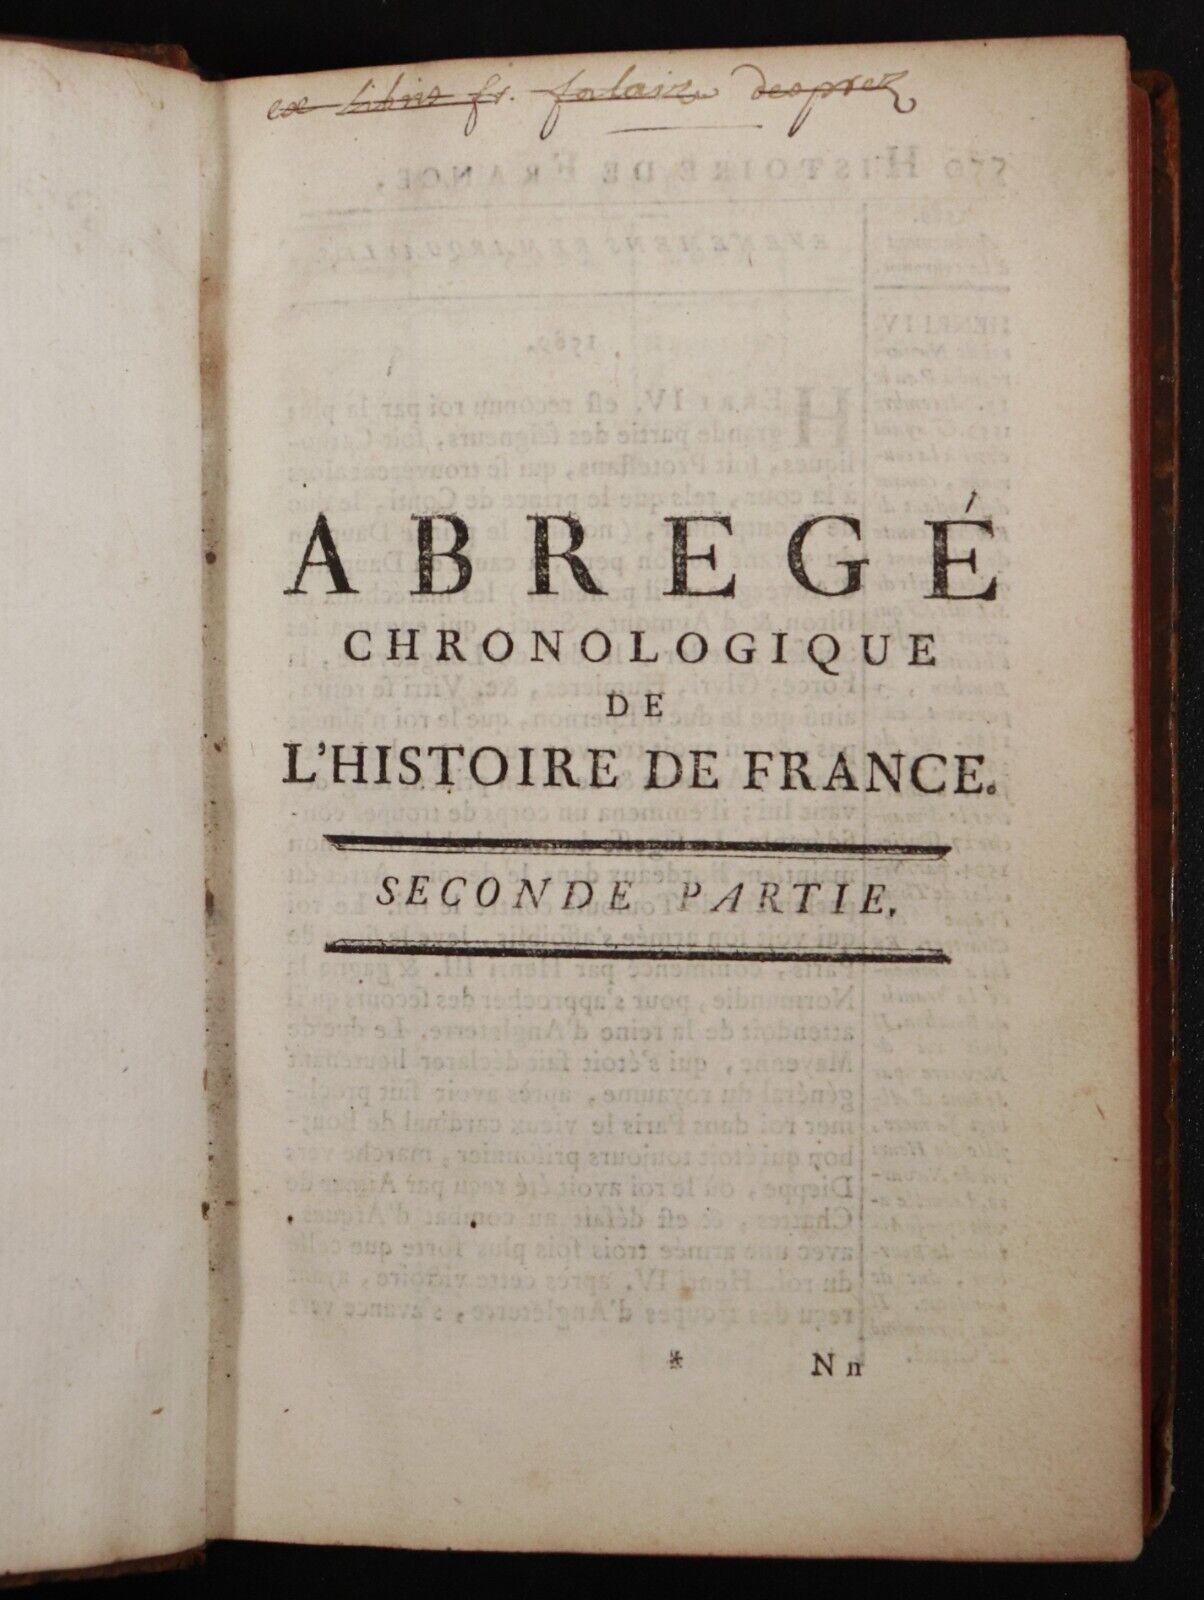 c1751 L'Histoire De France Abrege Chronologique Antiquarian French History Book